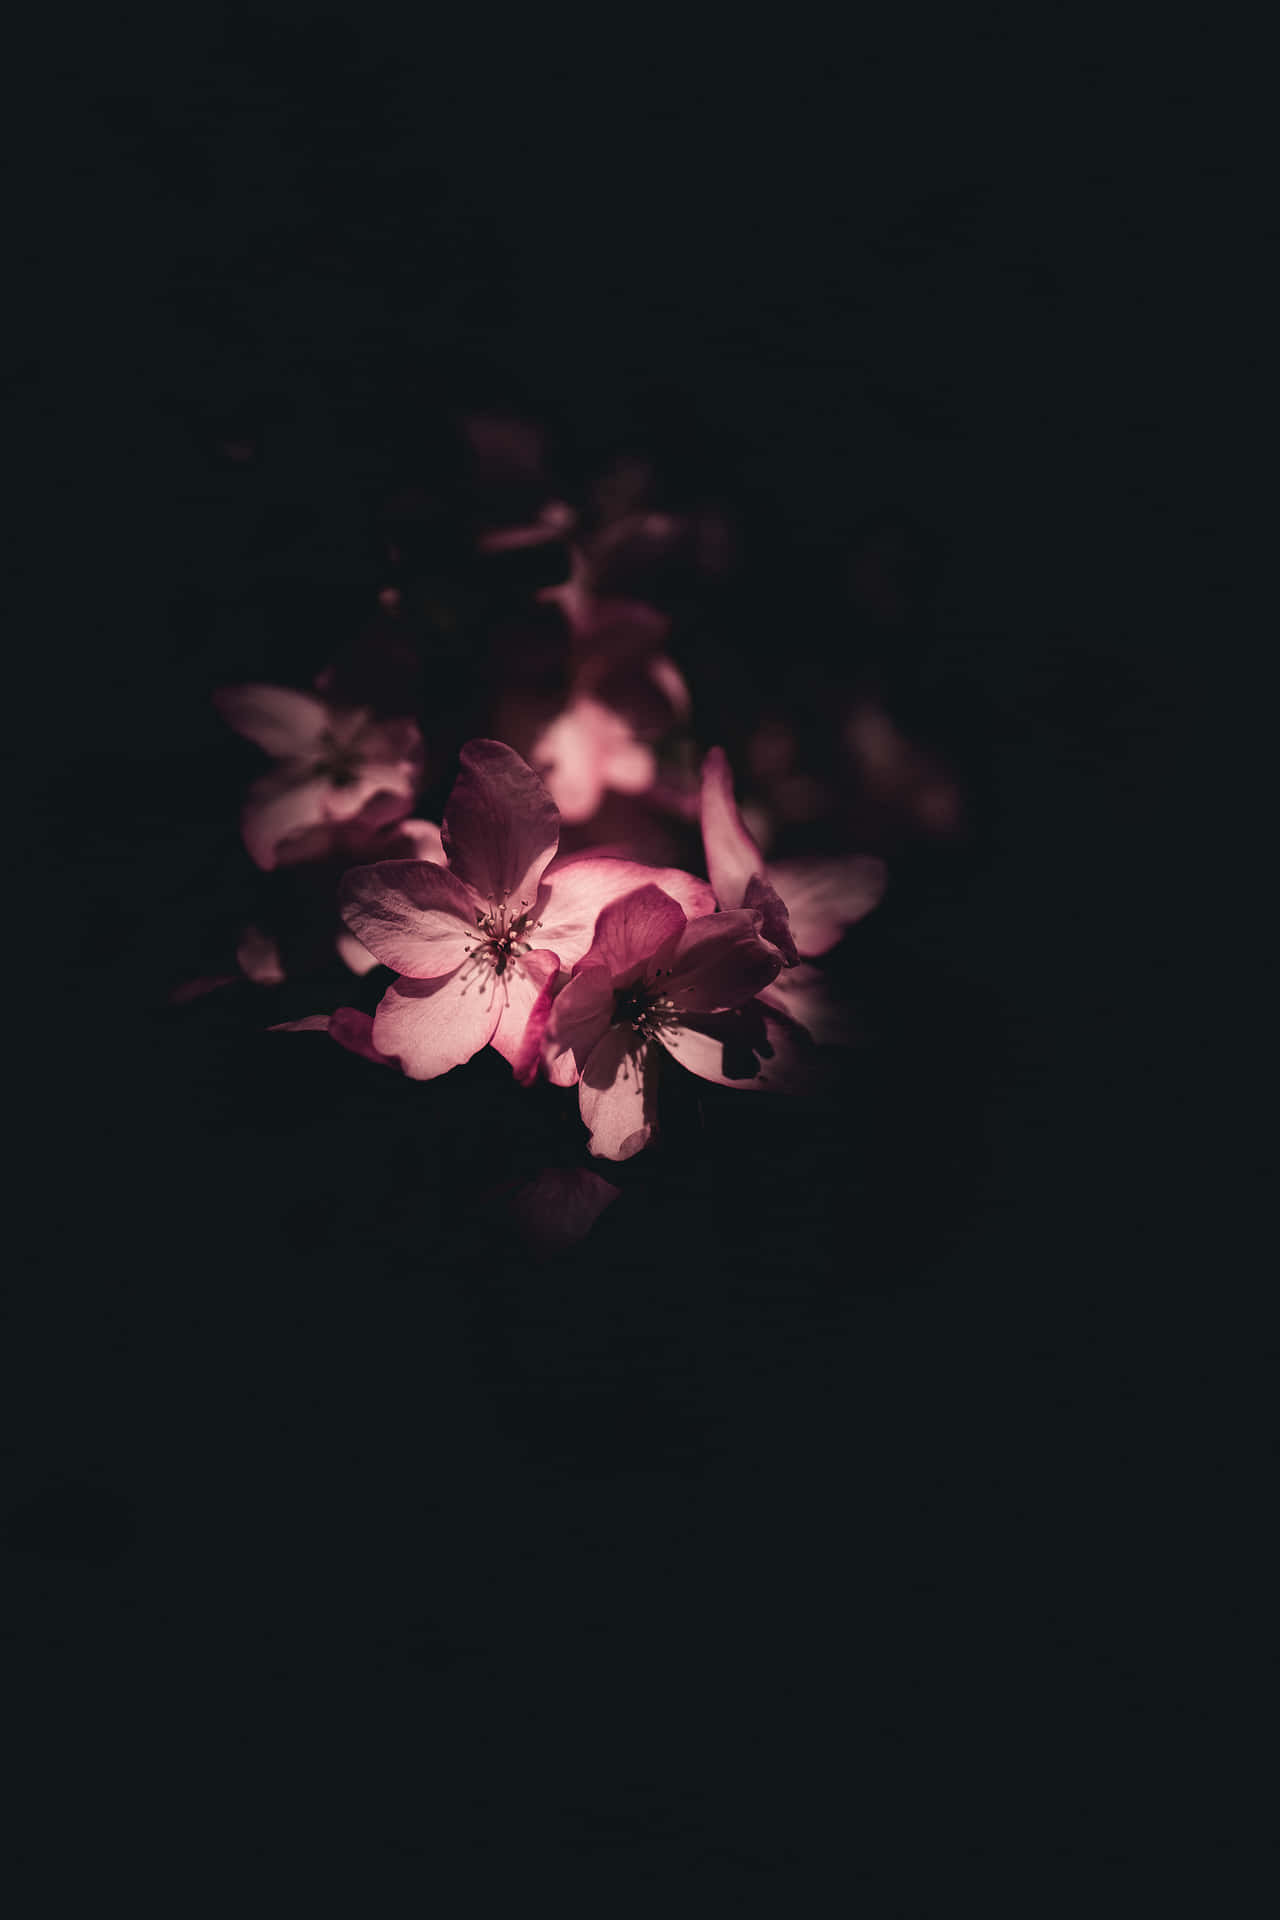 Aesthetic Flower Petals In Dark Wallpaper